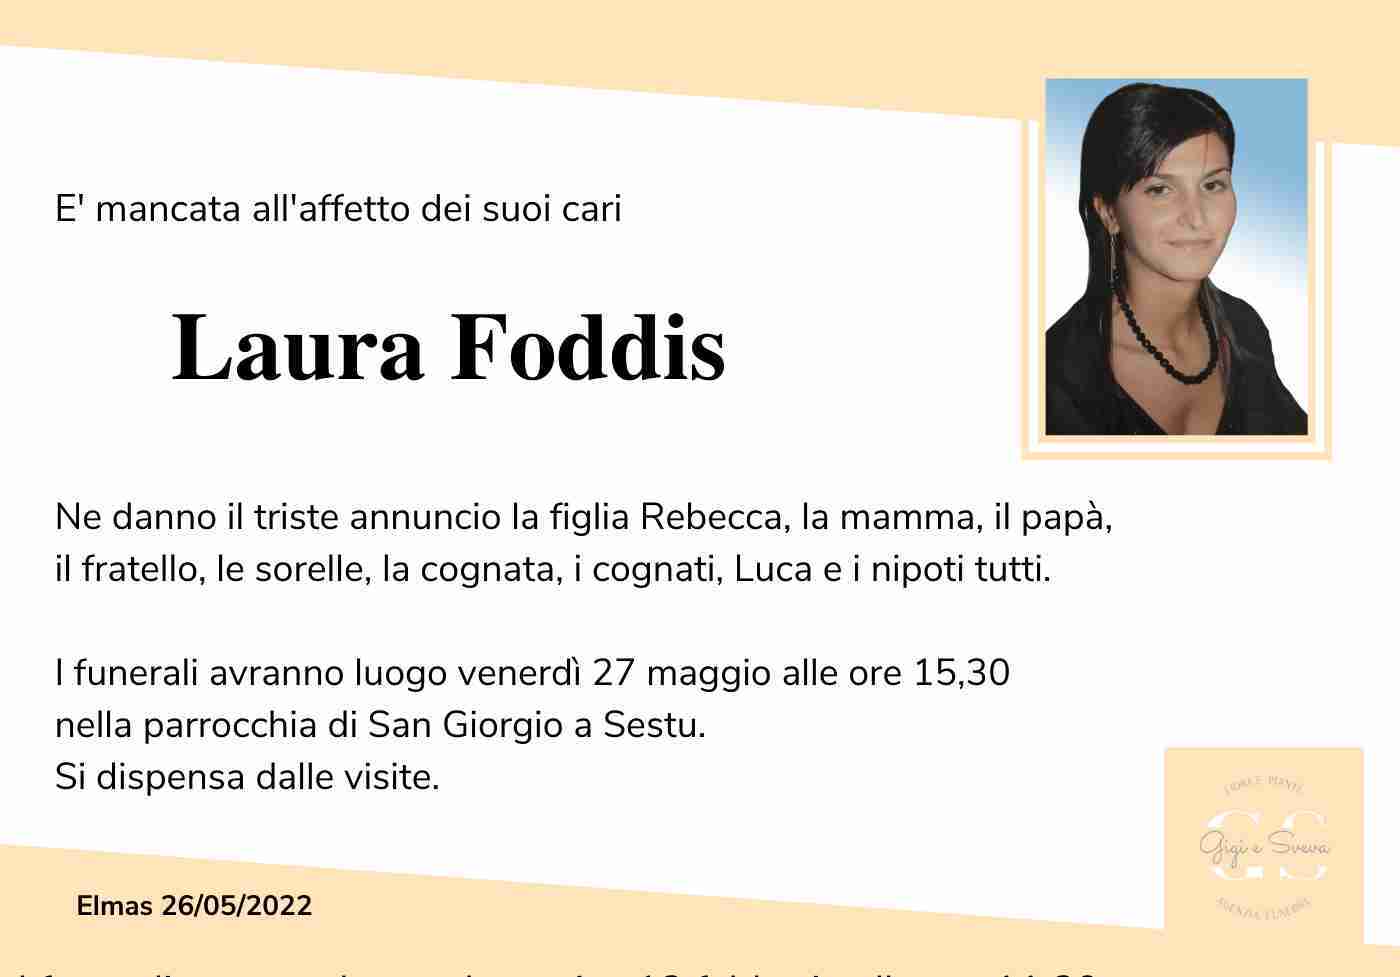 Laura Foddis